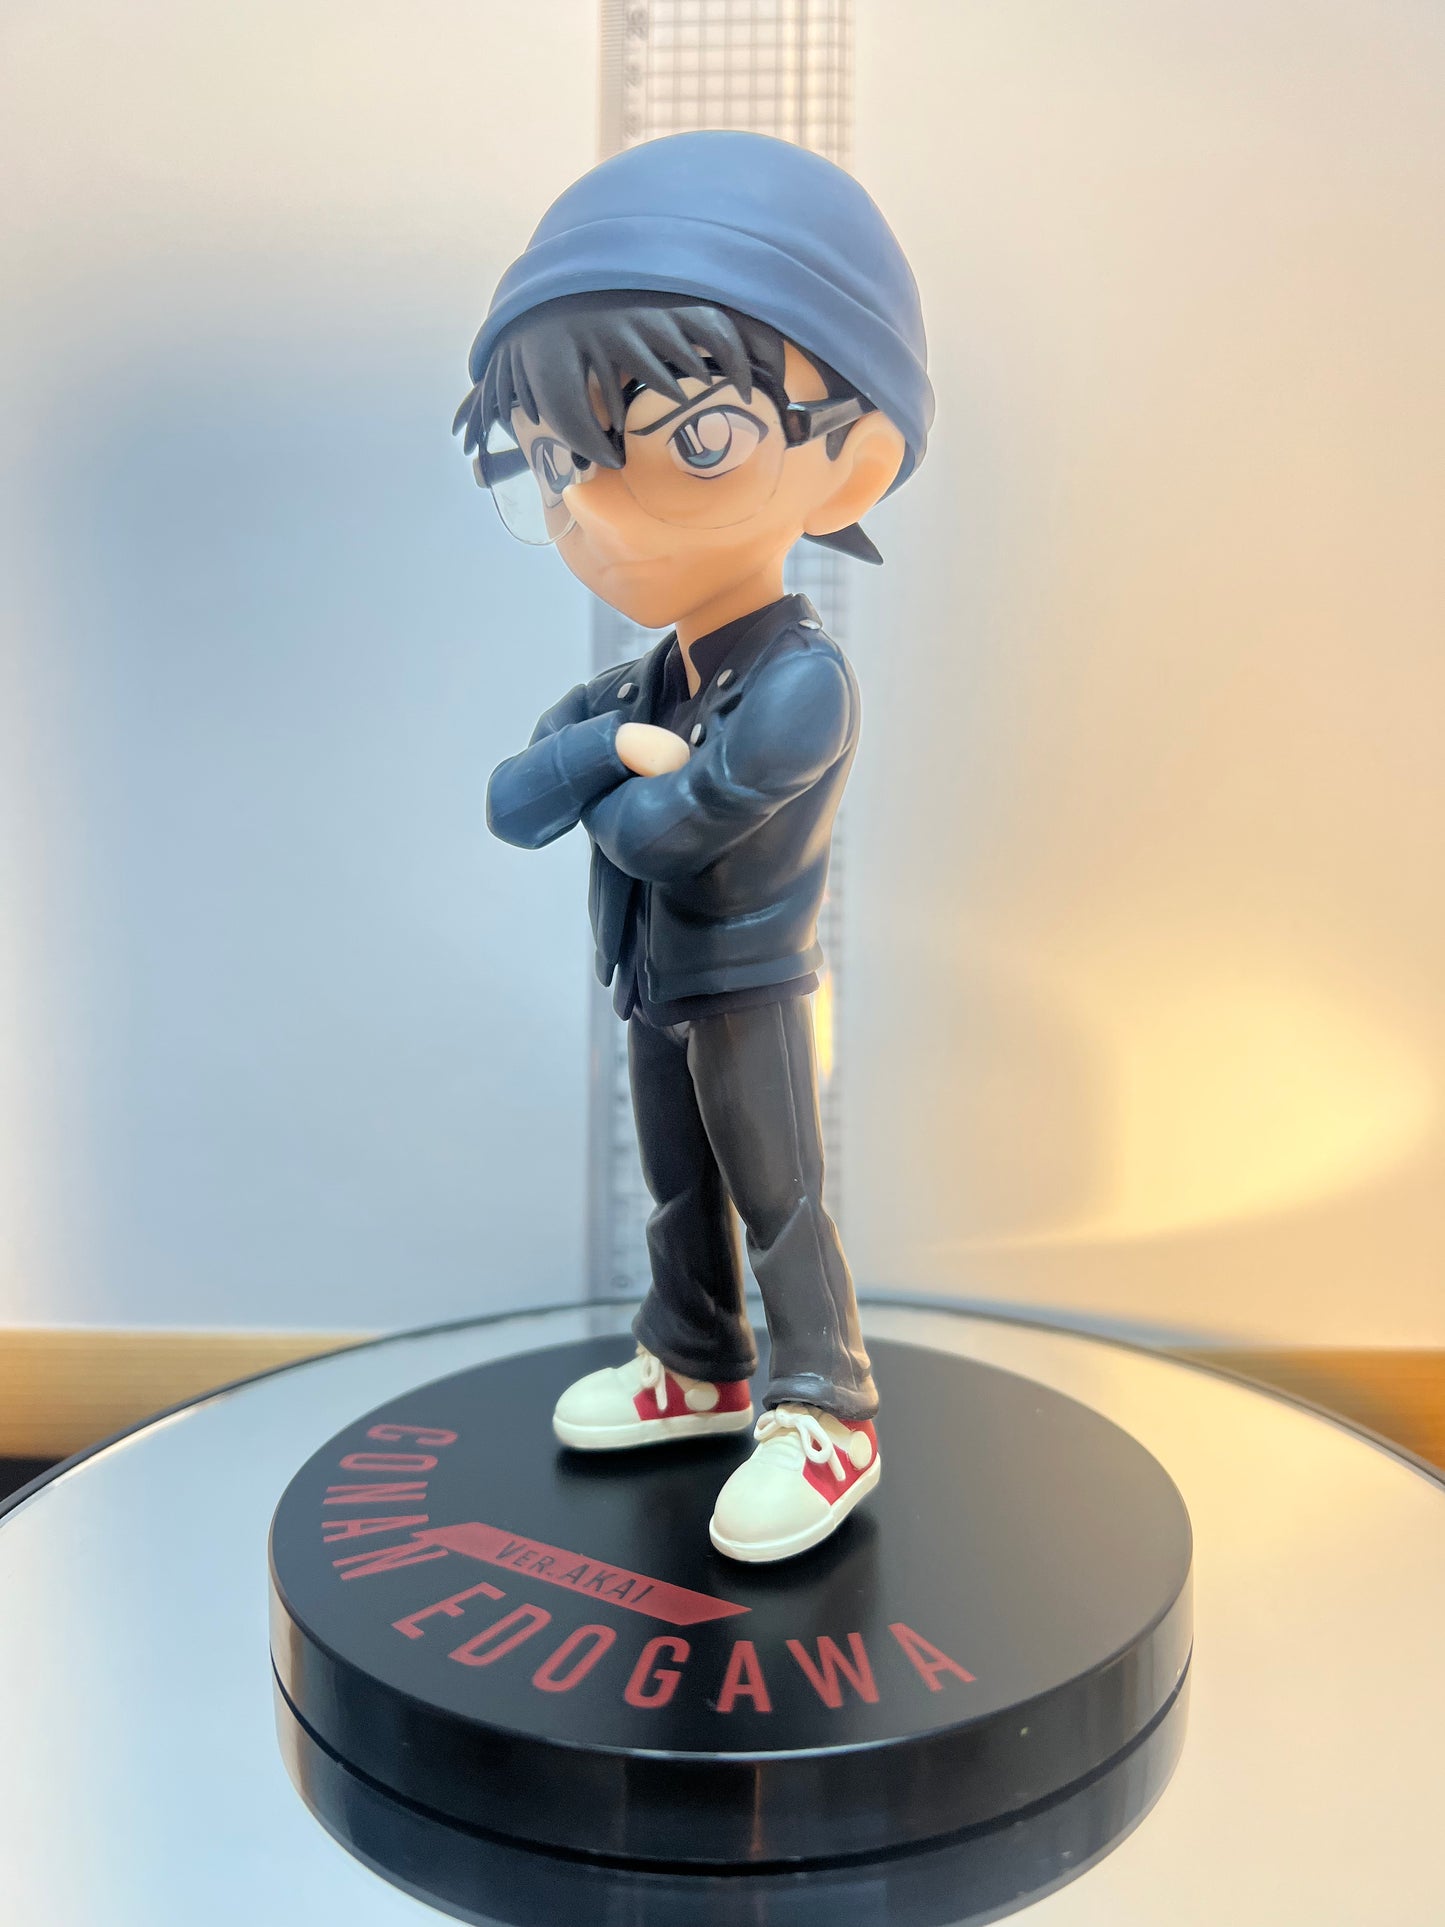 Detective Conan Case closed Ver.Akai Premium Figure Conan Edogawa 17cm Sega #203